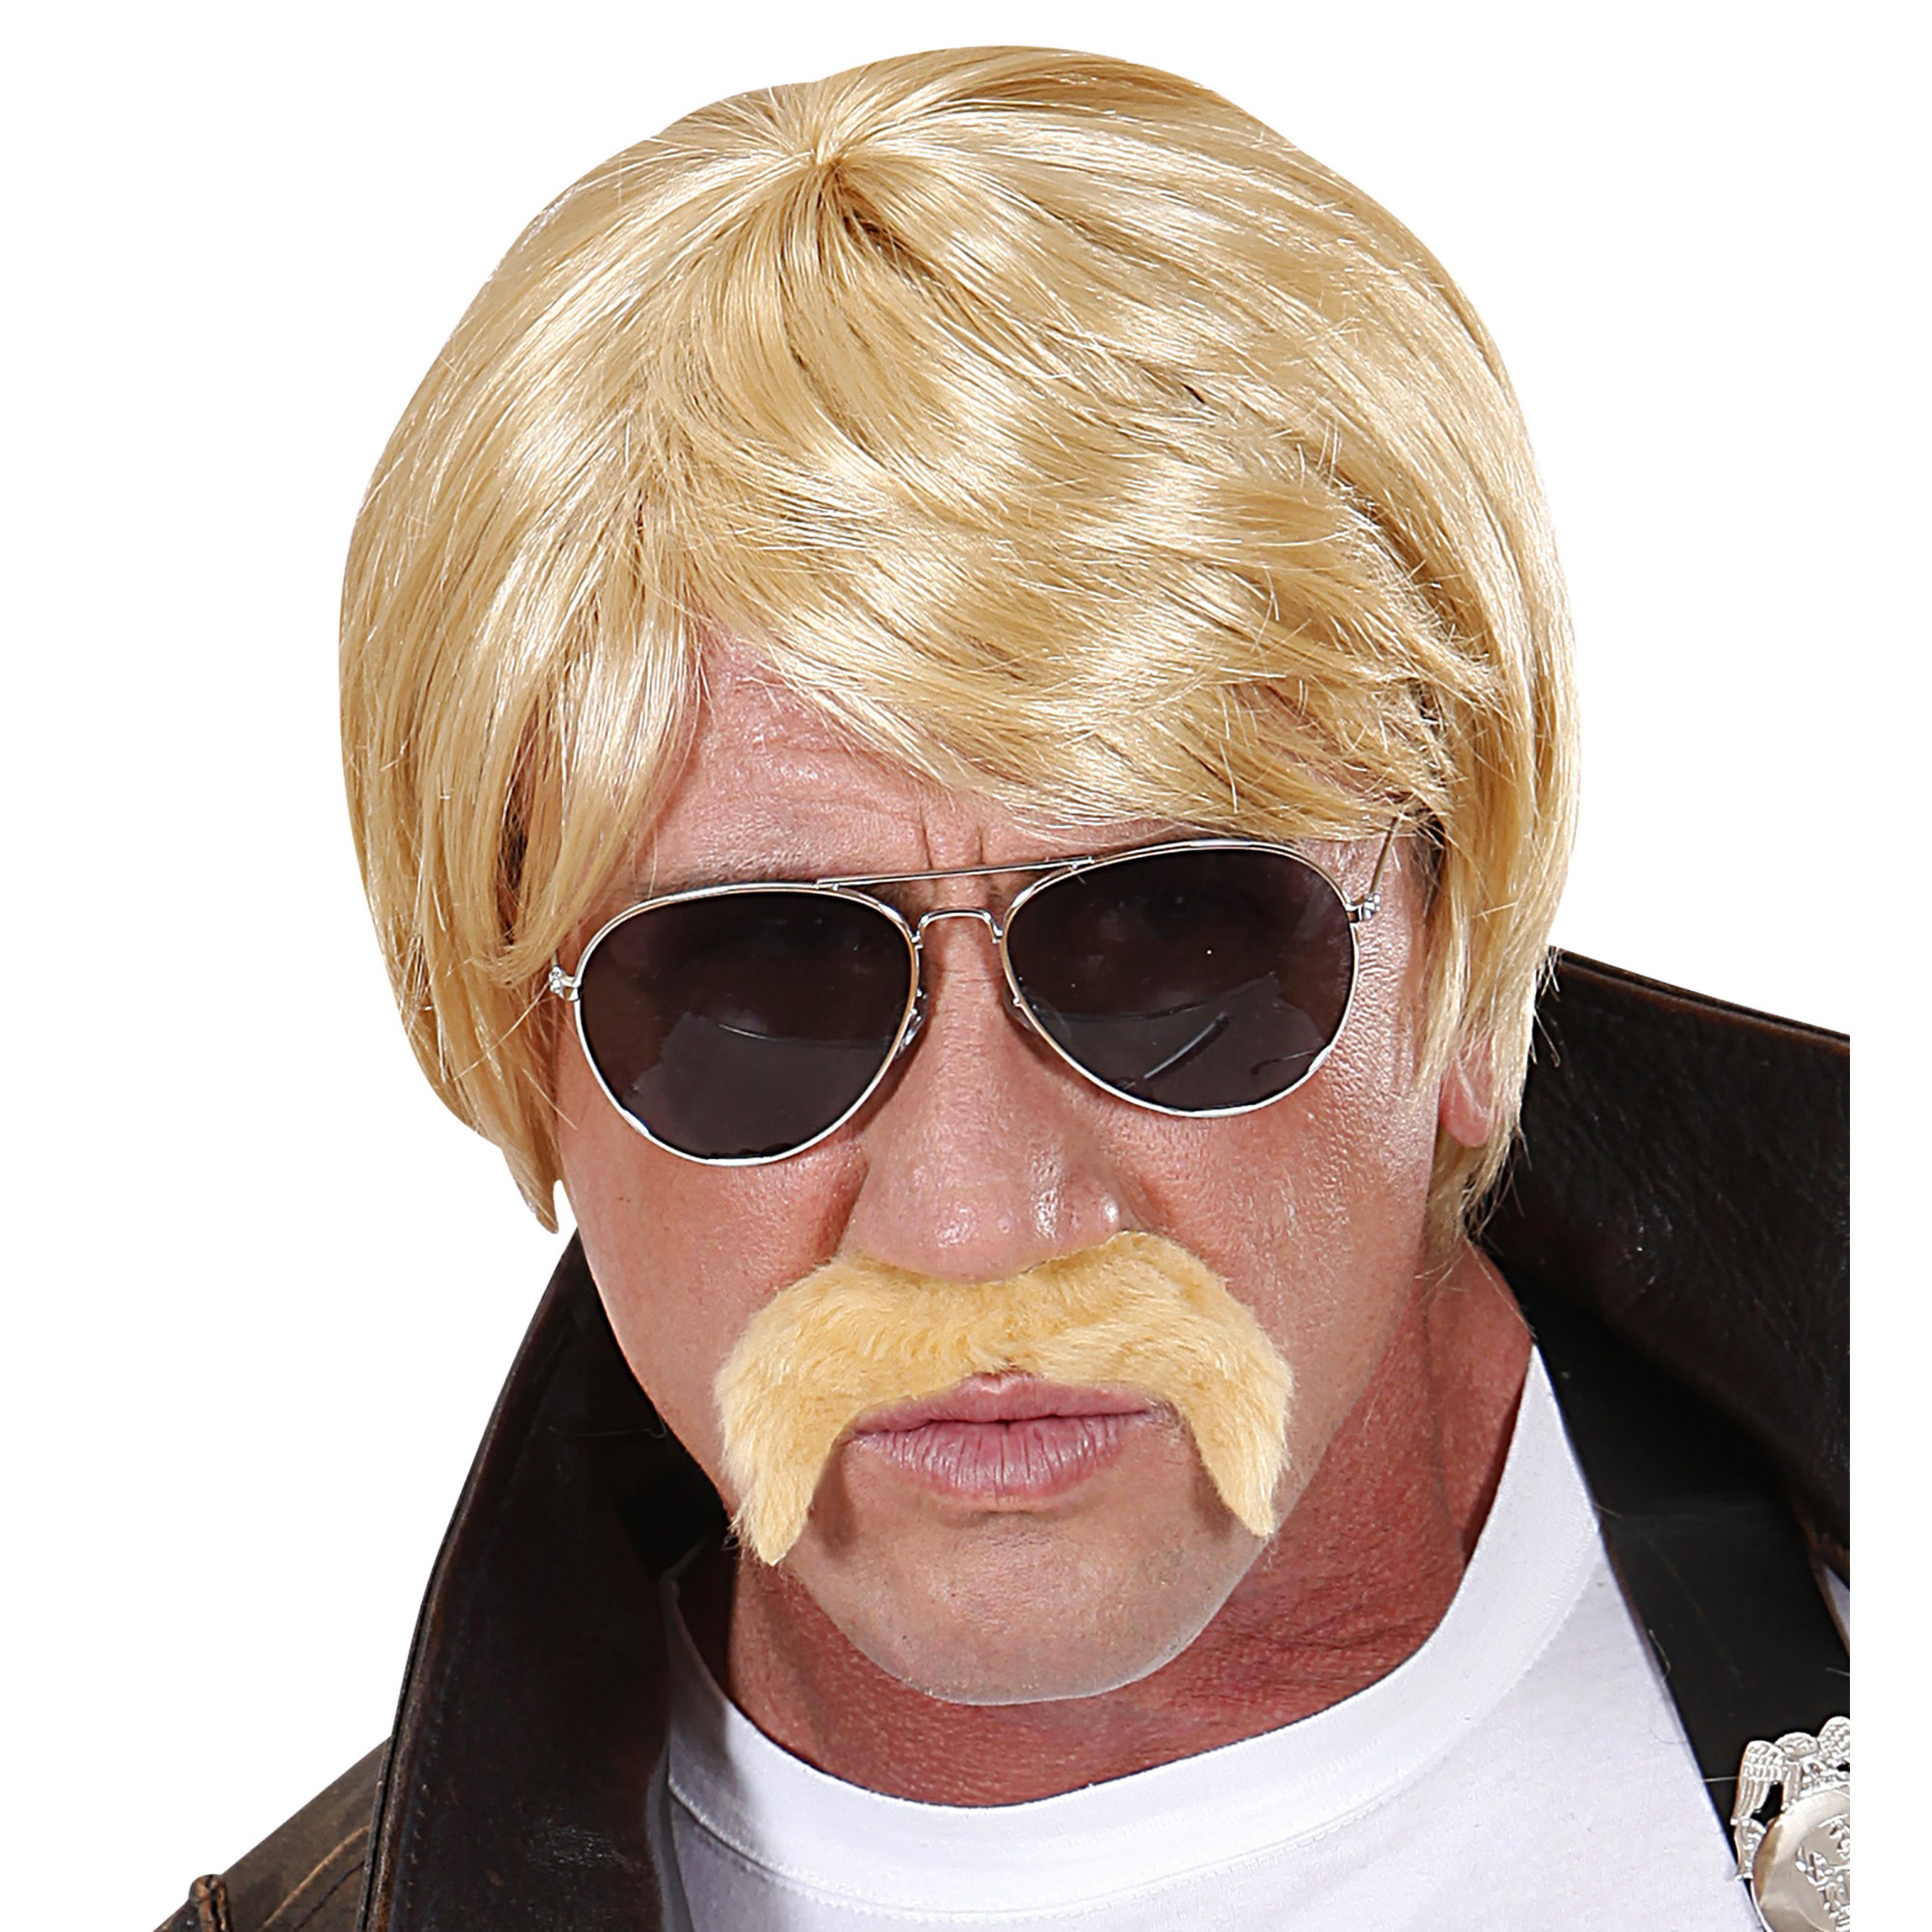 Undercover agent pruik snor blond en bril